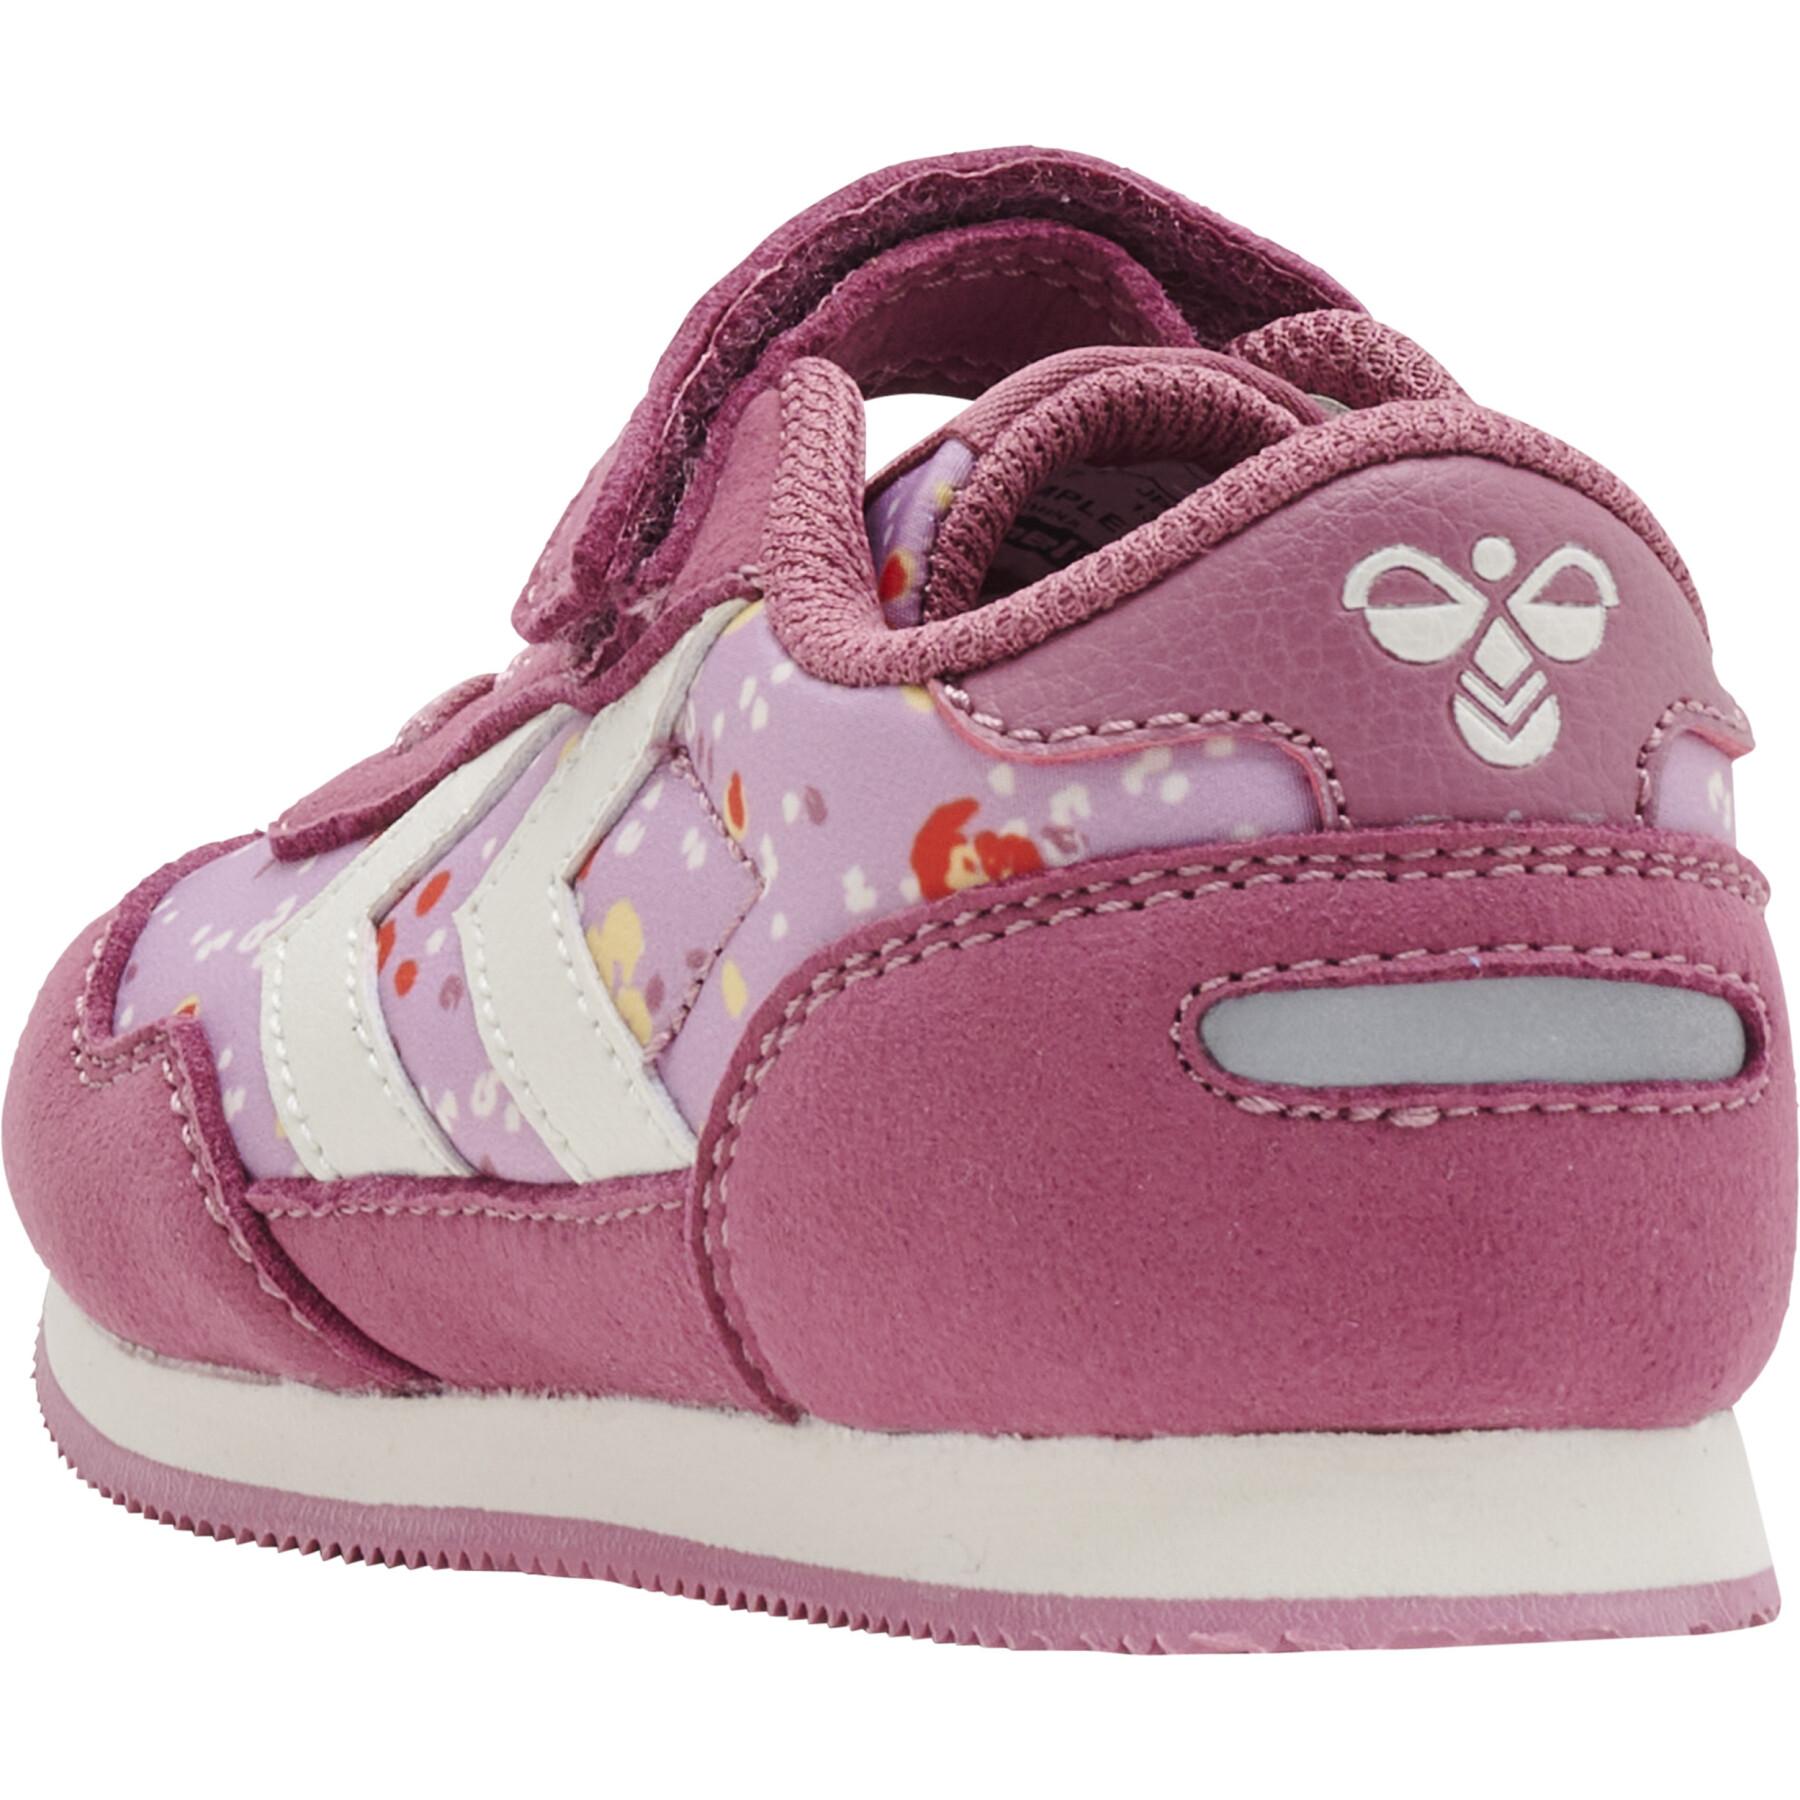 Baby girl sneakers Hummel Reflex